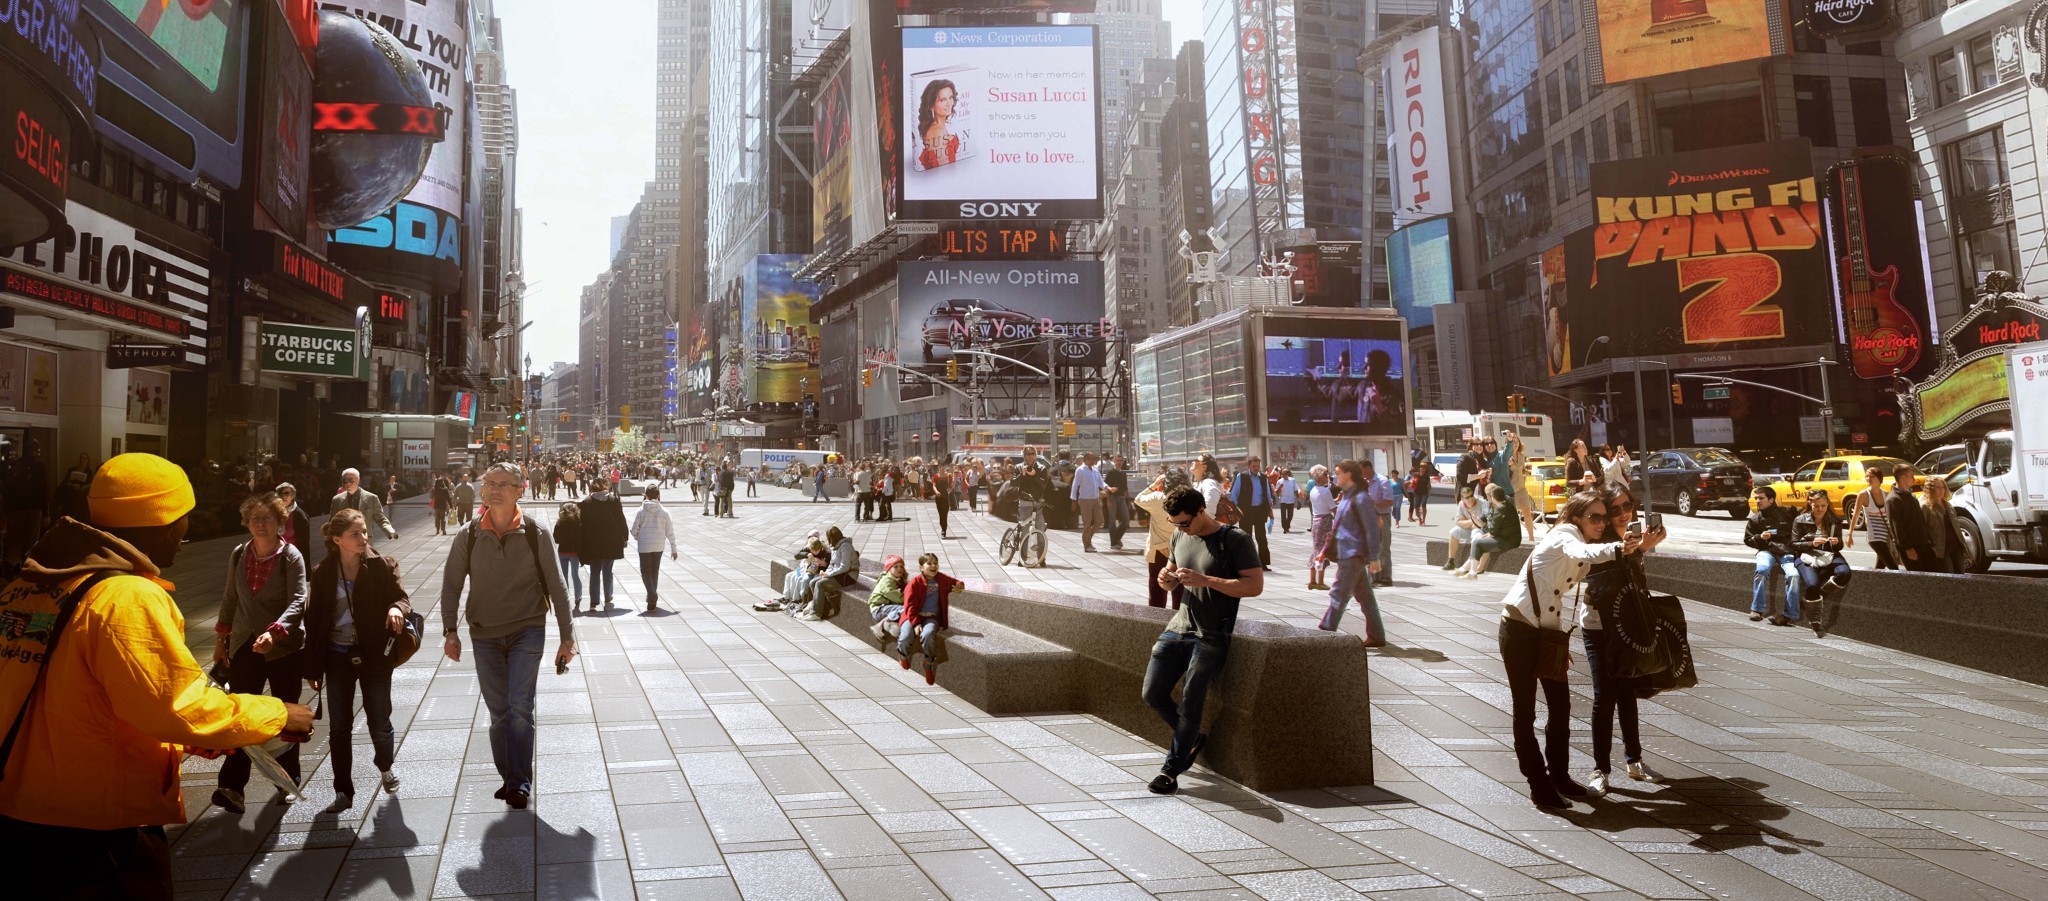 Snøhetta's proposed design for Times Square